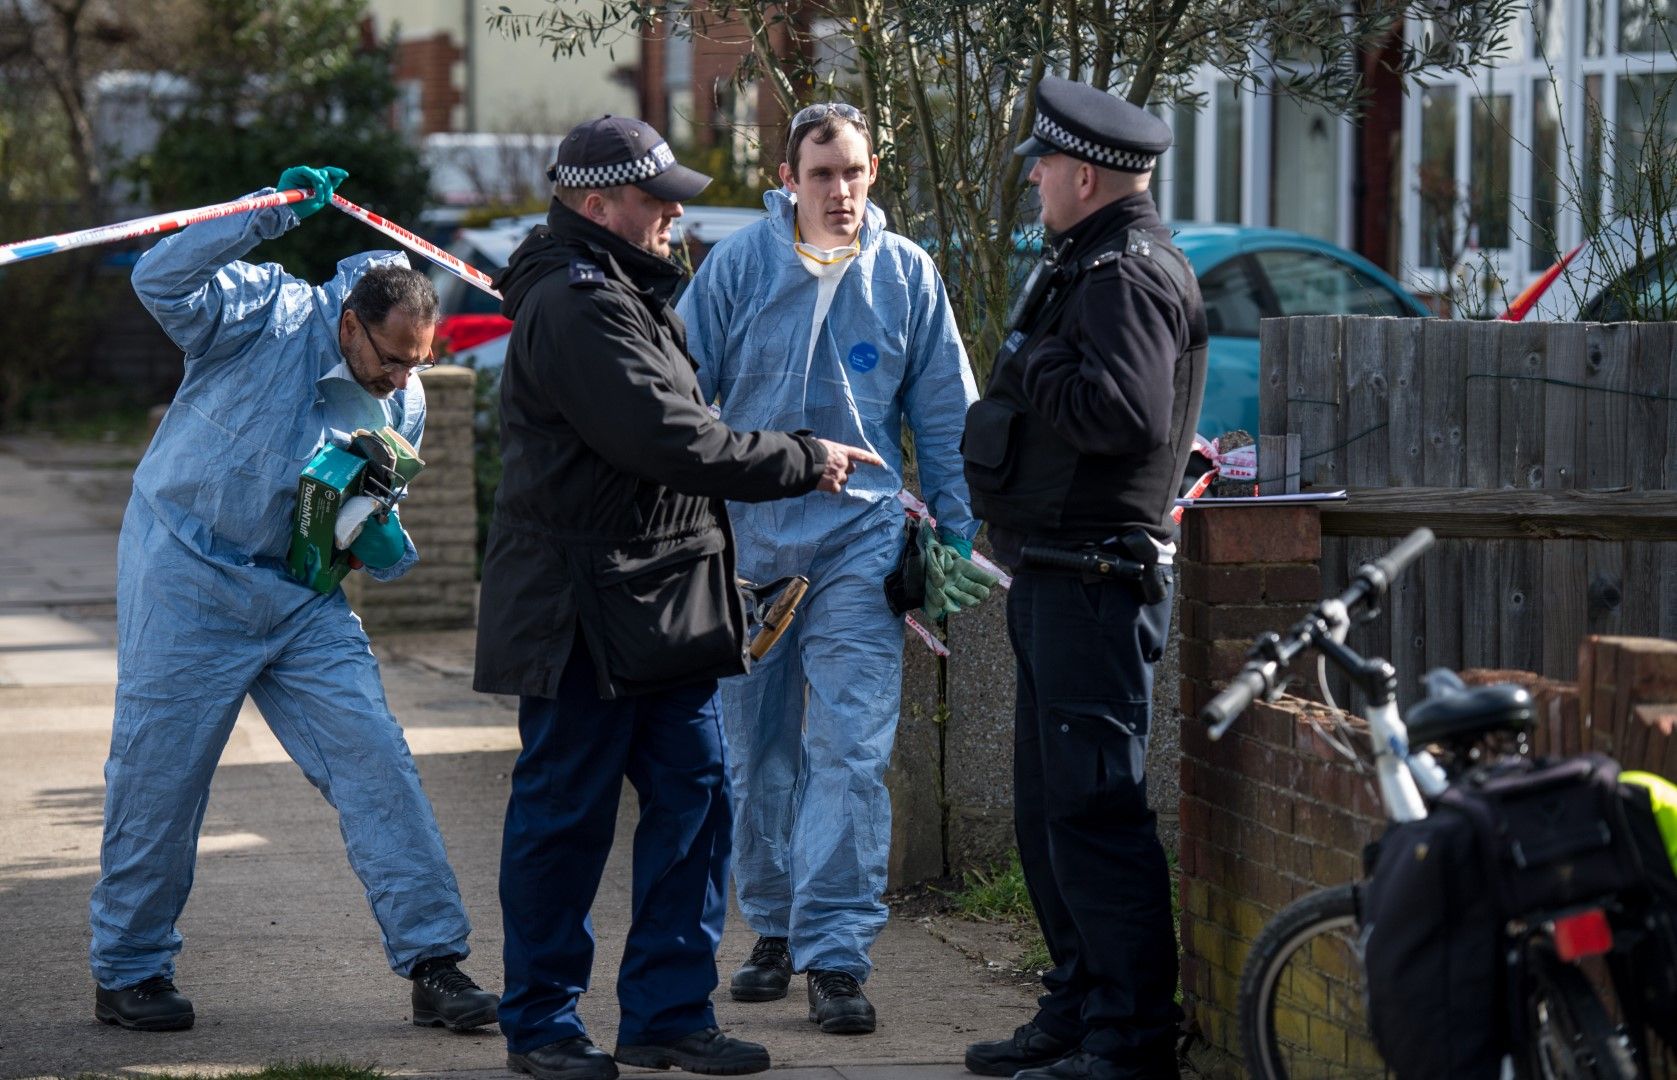 Криминалисти пред дома на руския имигрант Николай Глушков, който е намерен мъртъв в дома си в Ню Малдън на 14 март 2018 г. в Лондон, Англия